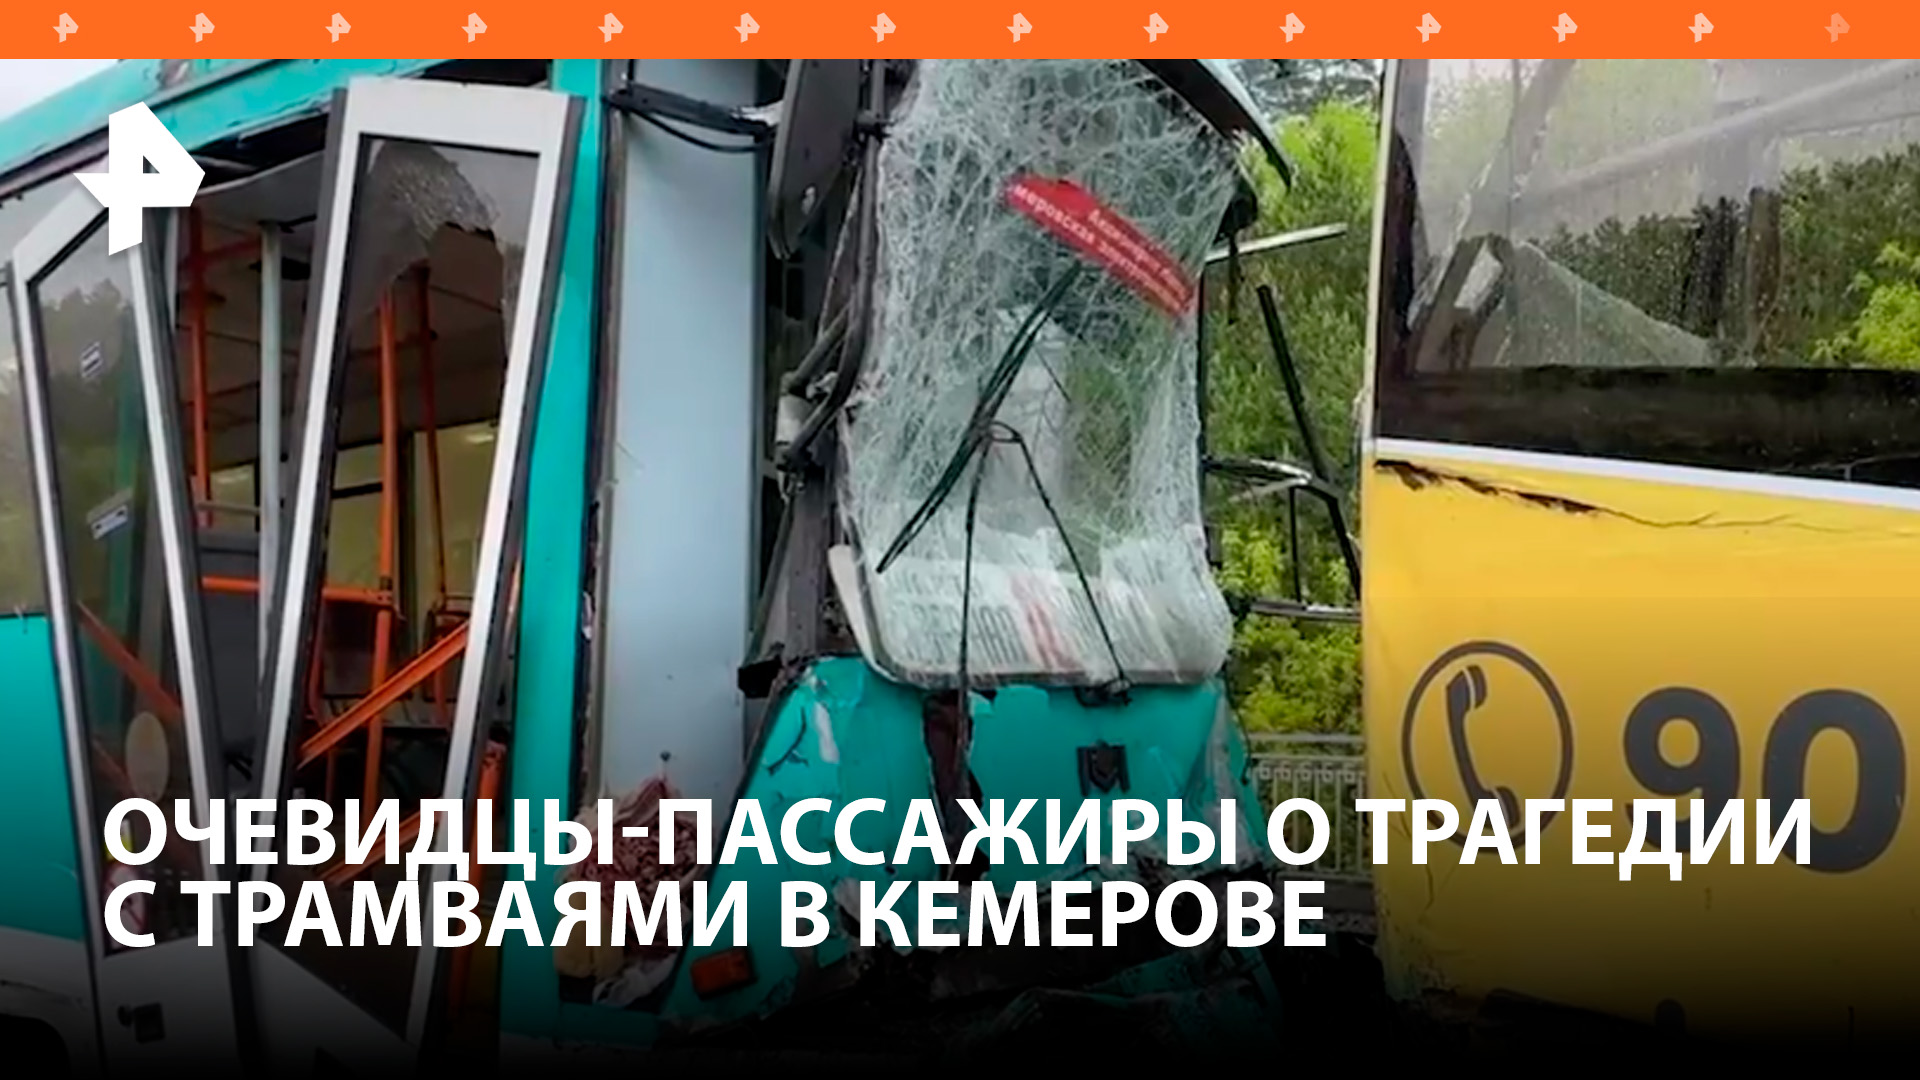 "Проснулся от удара": пострадавшие в ДТП с трамваями в Кемерове рассказали о страшной поездке / РЕН